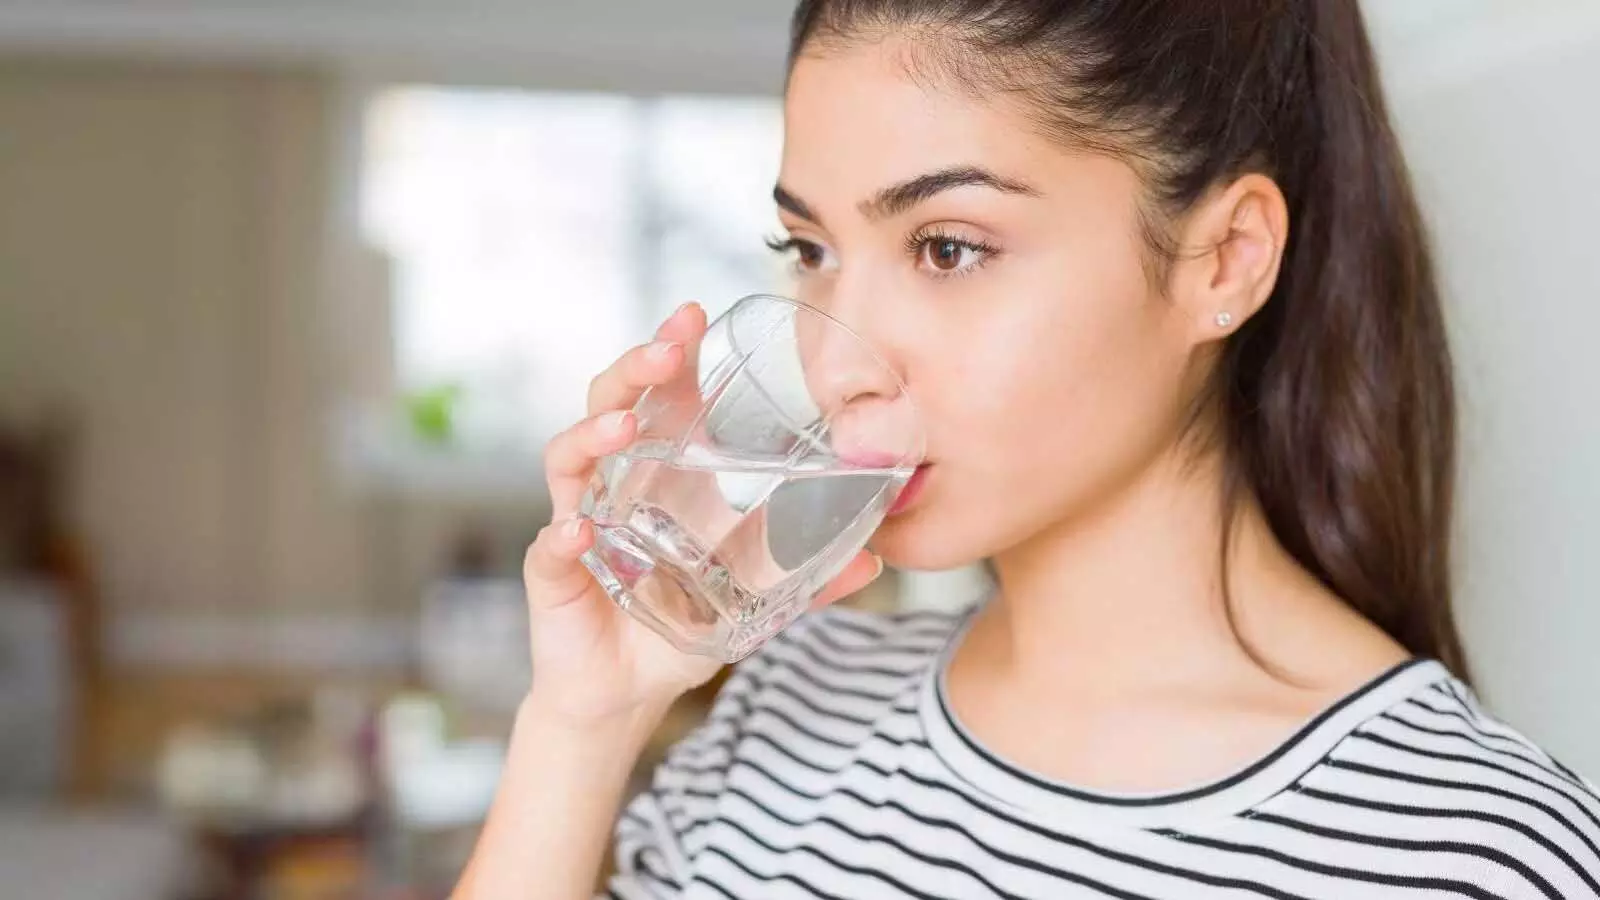 Health tips: पानी पीने का सही तरीका जानिए इस टिप्स की मदद से